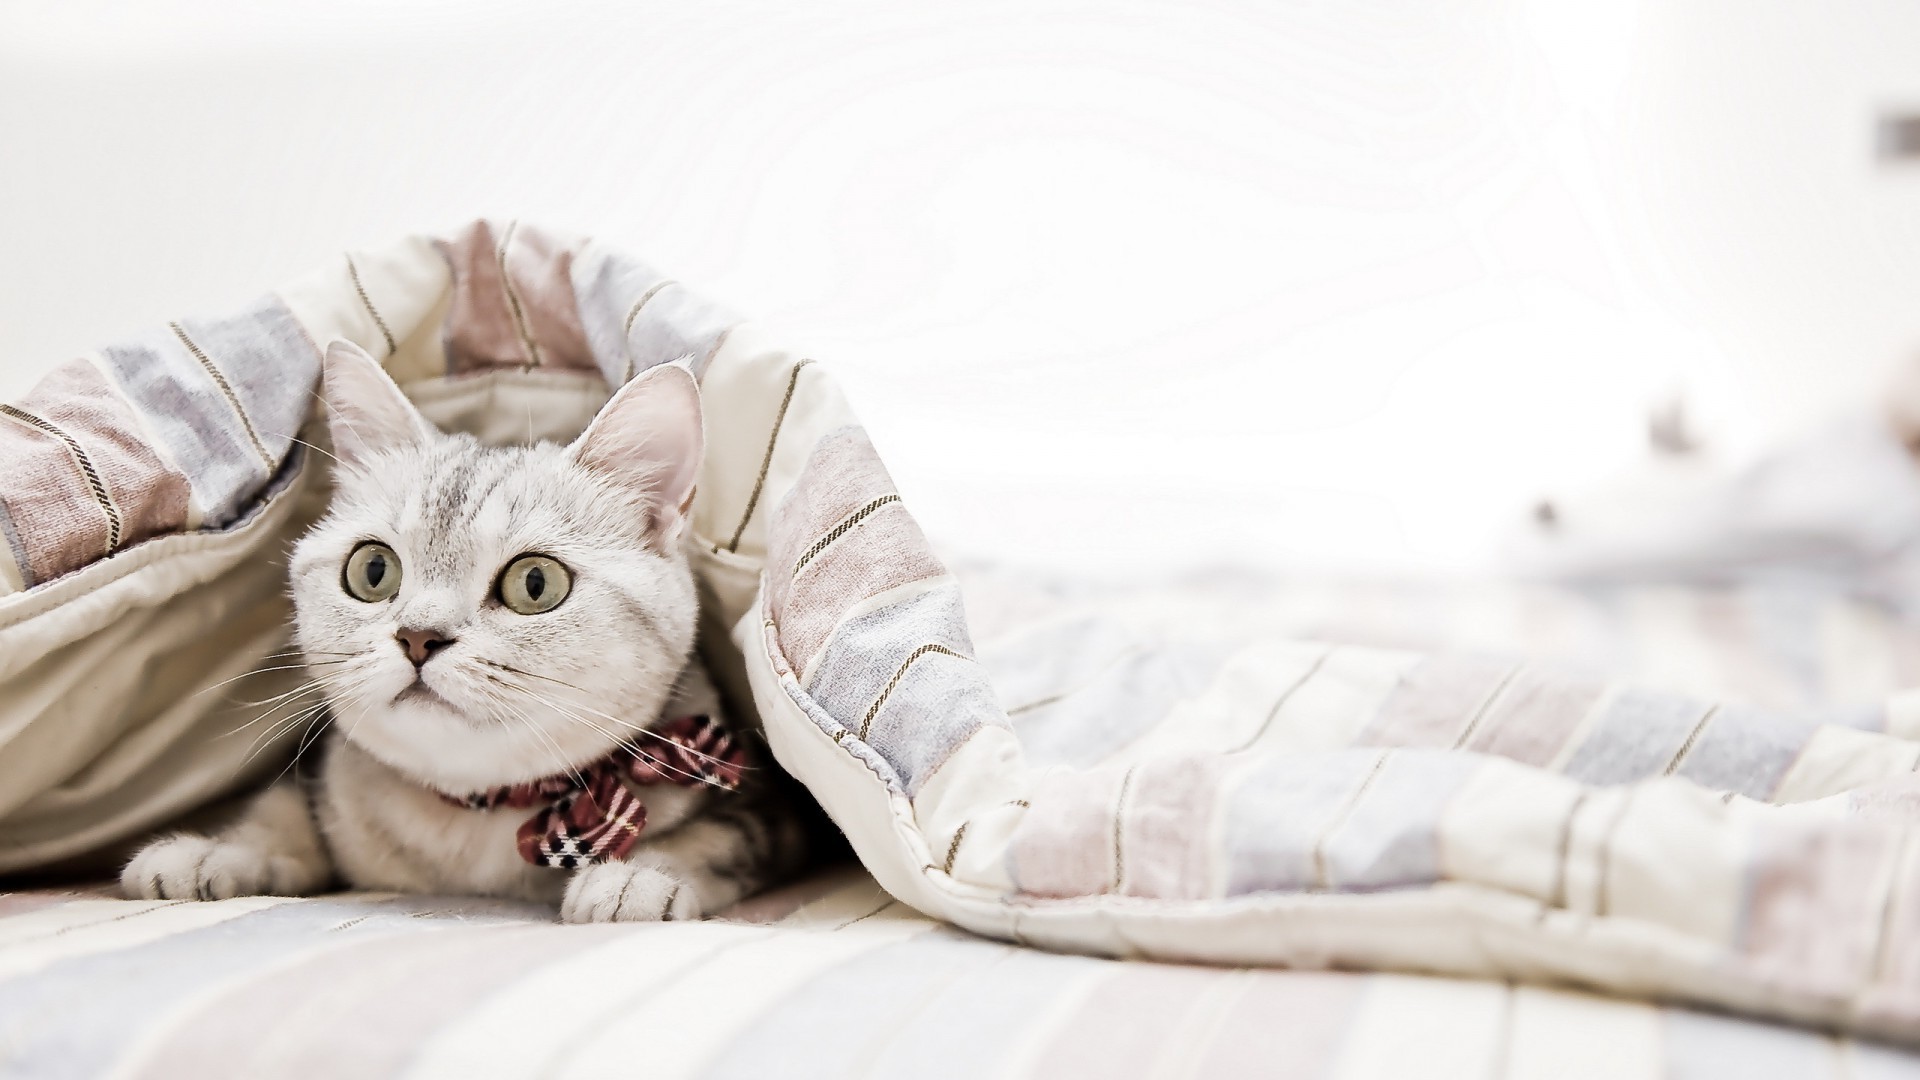 cat, Bedrooms, Blankets, Animals Wallpapers HD / Desktop and Mobile